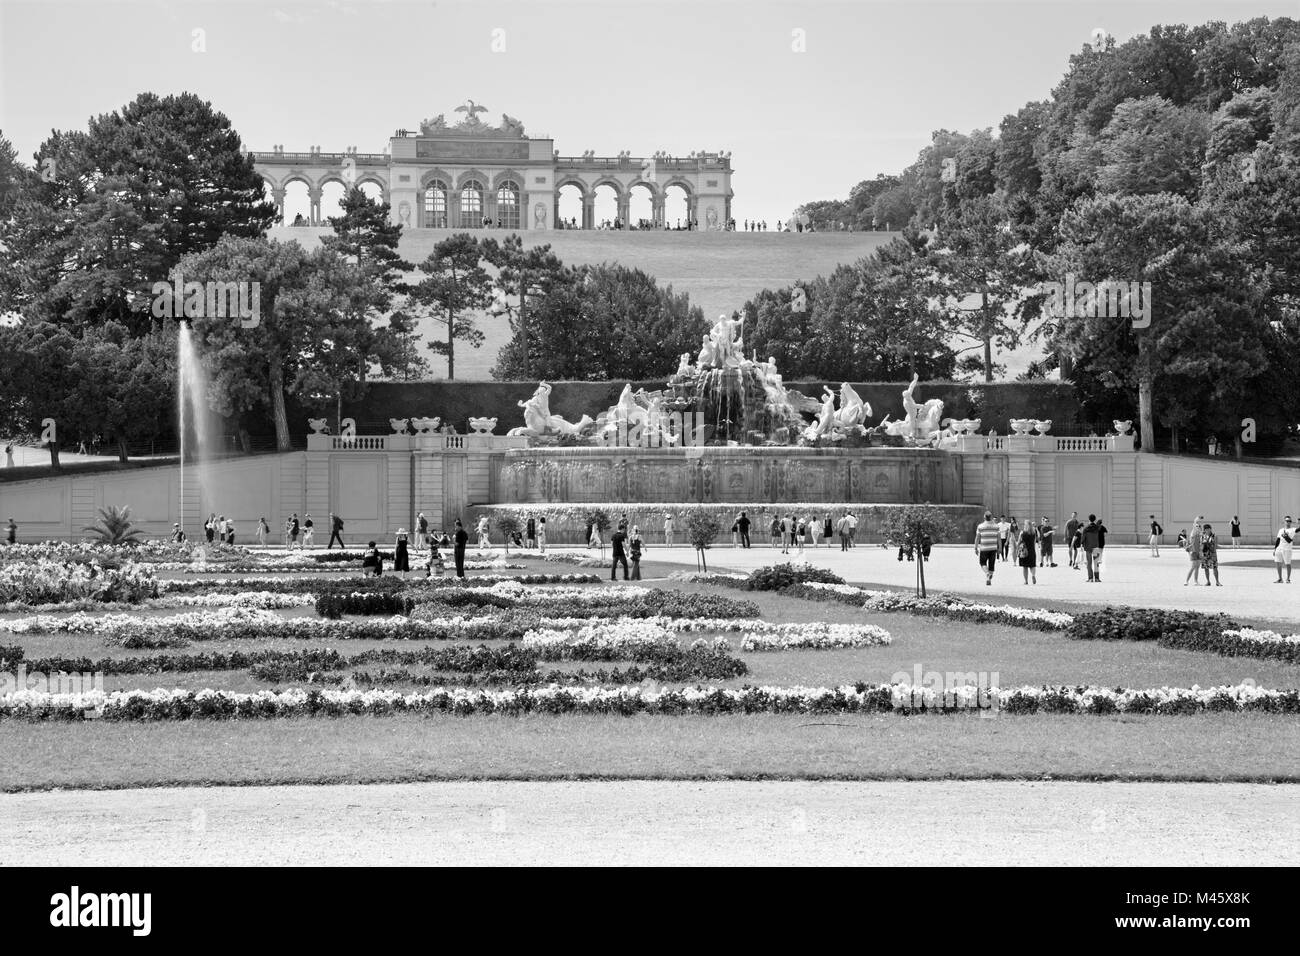 Wien, Österreich - 30. Juli 2014: Das Schloss Schönbrunn - Gloriette und Garten und Neptunbrunnen. Stockfoto